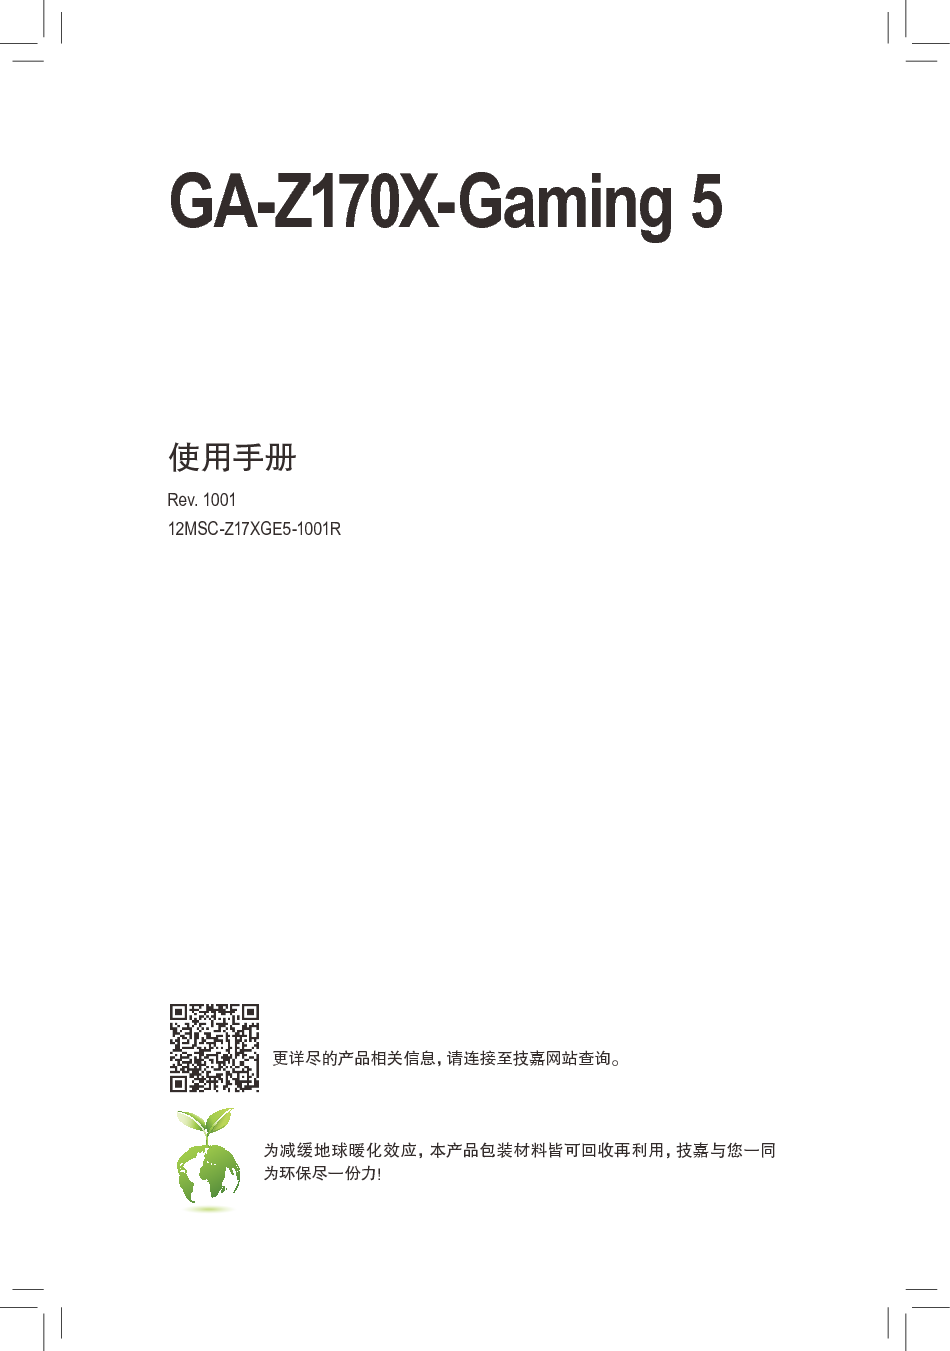 技嘉 Gigabyte GA-Z170X-Gaming 5 1001版 使用手册 封面